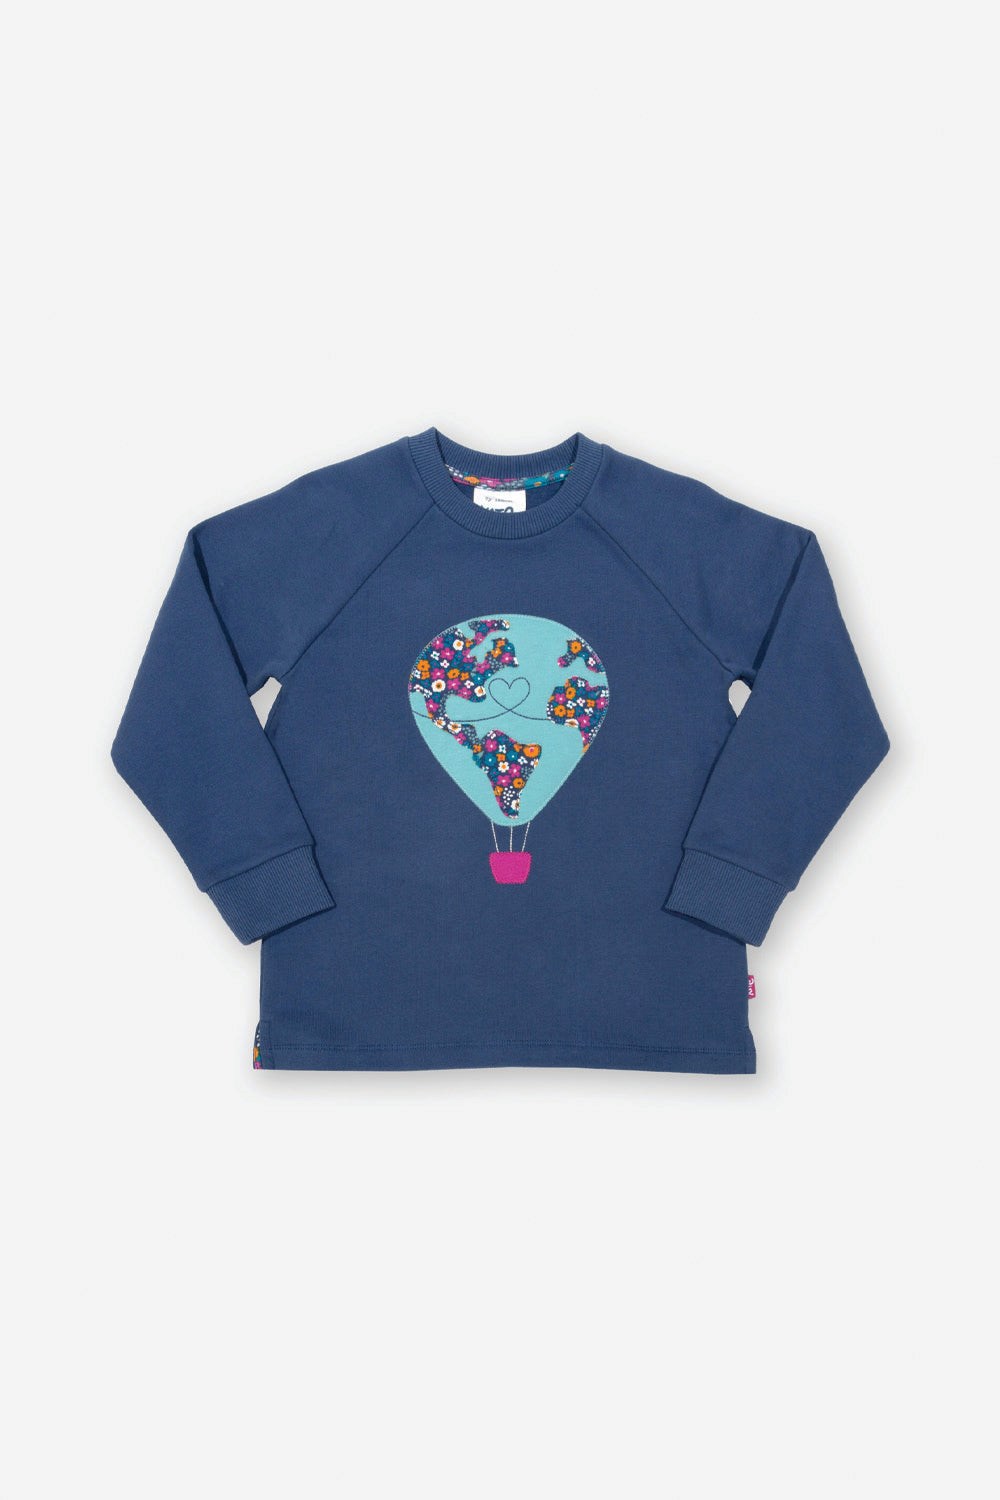 Around The World Baby/Kids Sweatshirt -